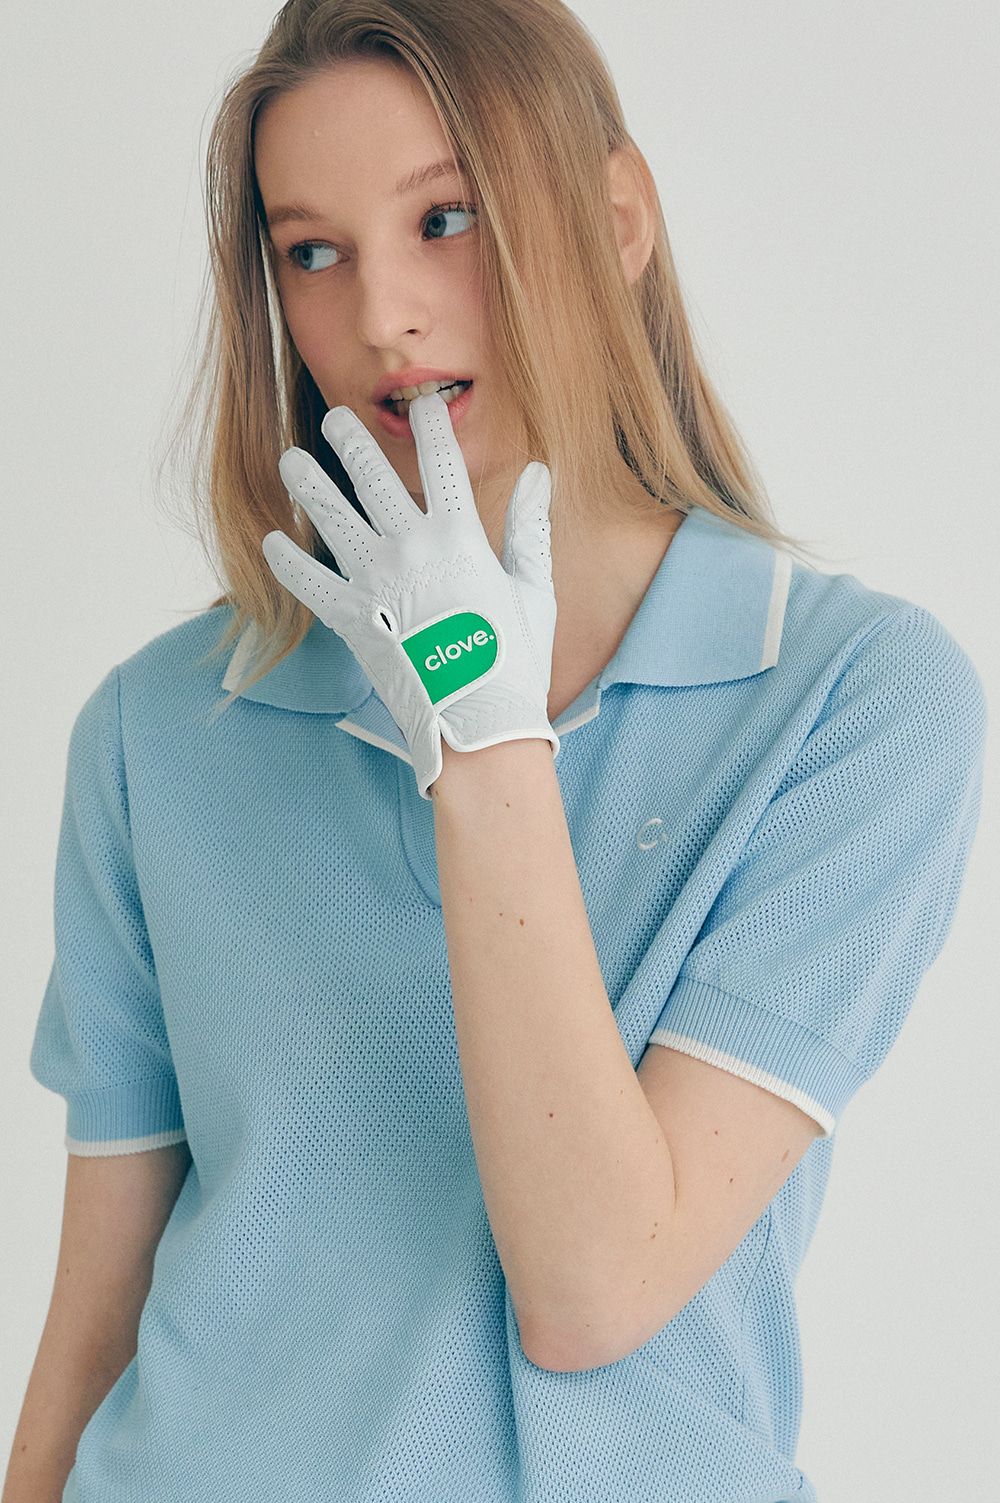 clove - [22SS clove] Golf Glove for Women (Green)